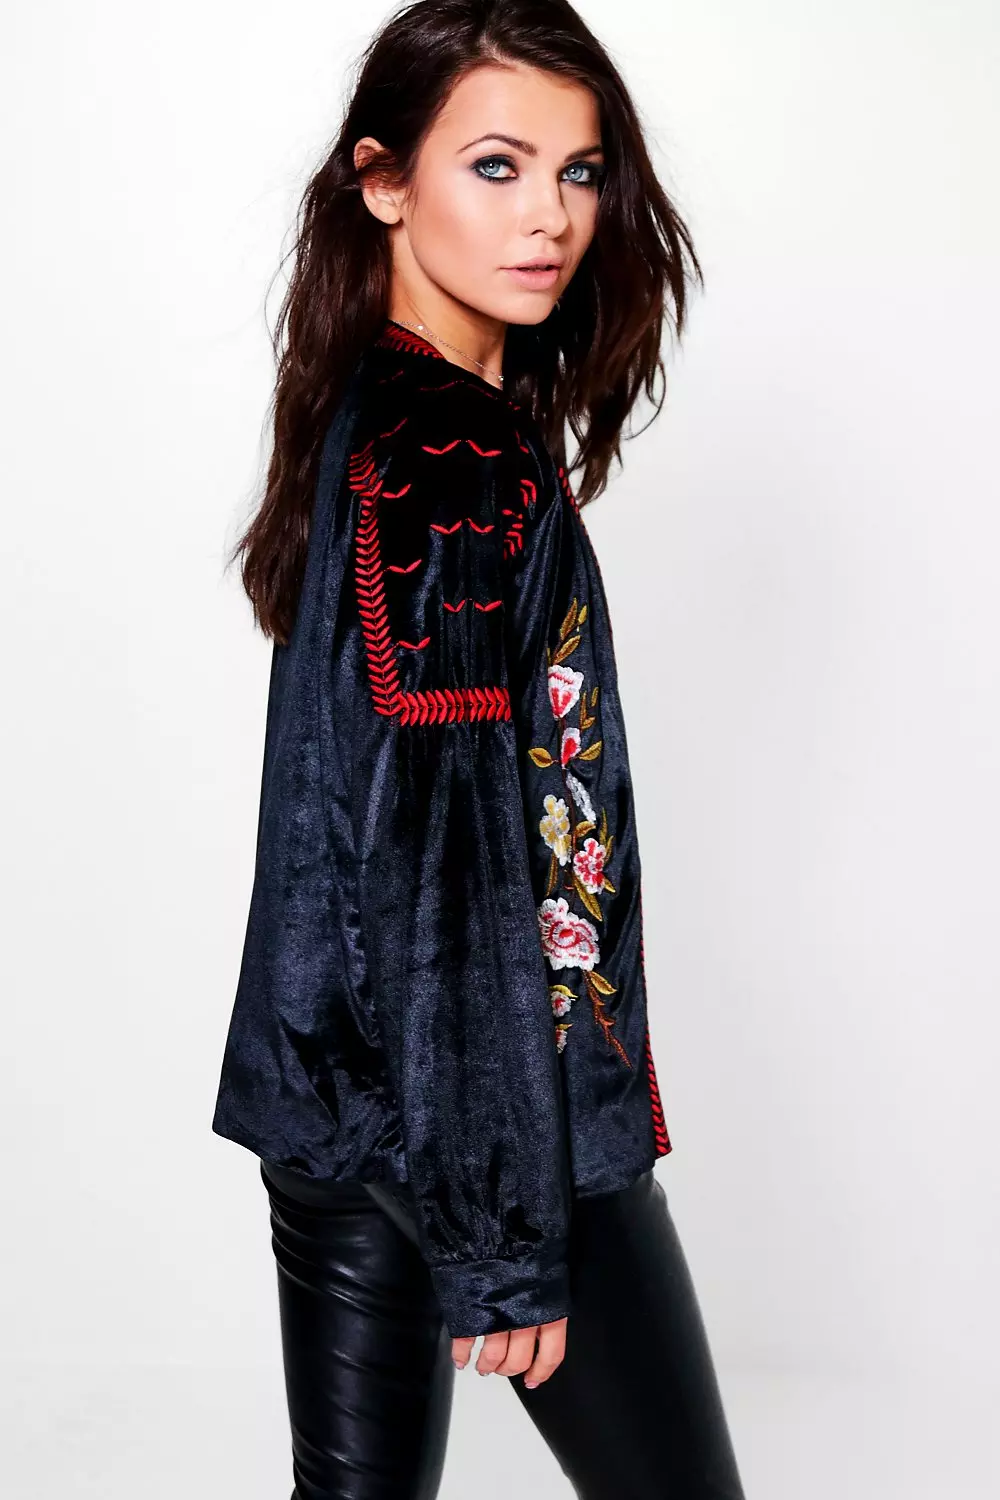 Black Velvet Jacket,multi Colour Floral Embroidery, Embellished Formal  Blazer for Women, Plus Size Jacket -  Hong Kong